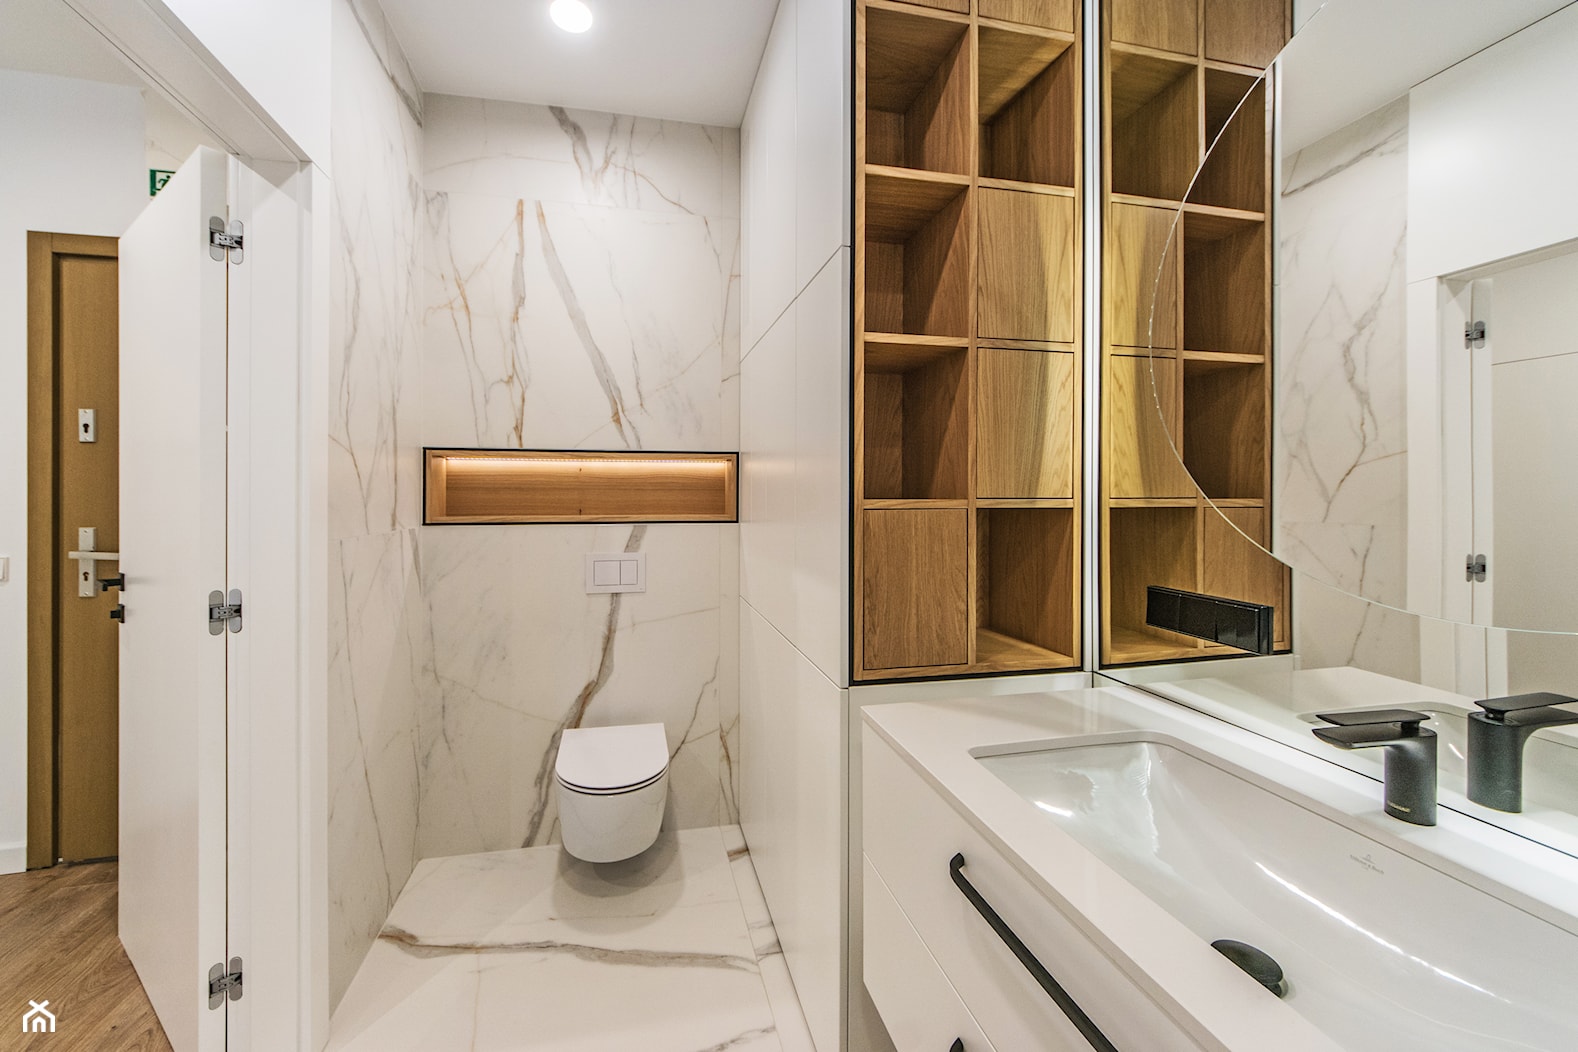 Projekt mieszkanie w Gdańsku - styl nowoczesny - łazienka z białą płytką z szarą żyłą i jasnym drewnem - zdjęcie od Le-DESIGN - Homebook